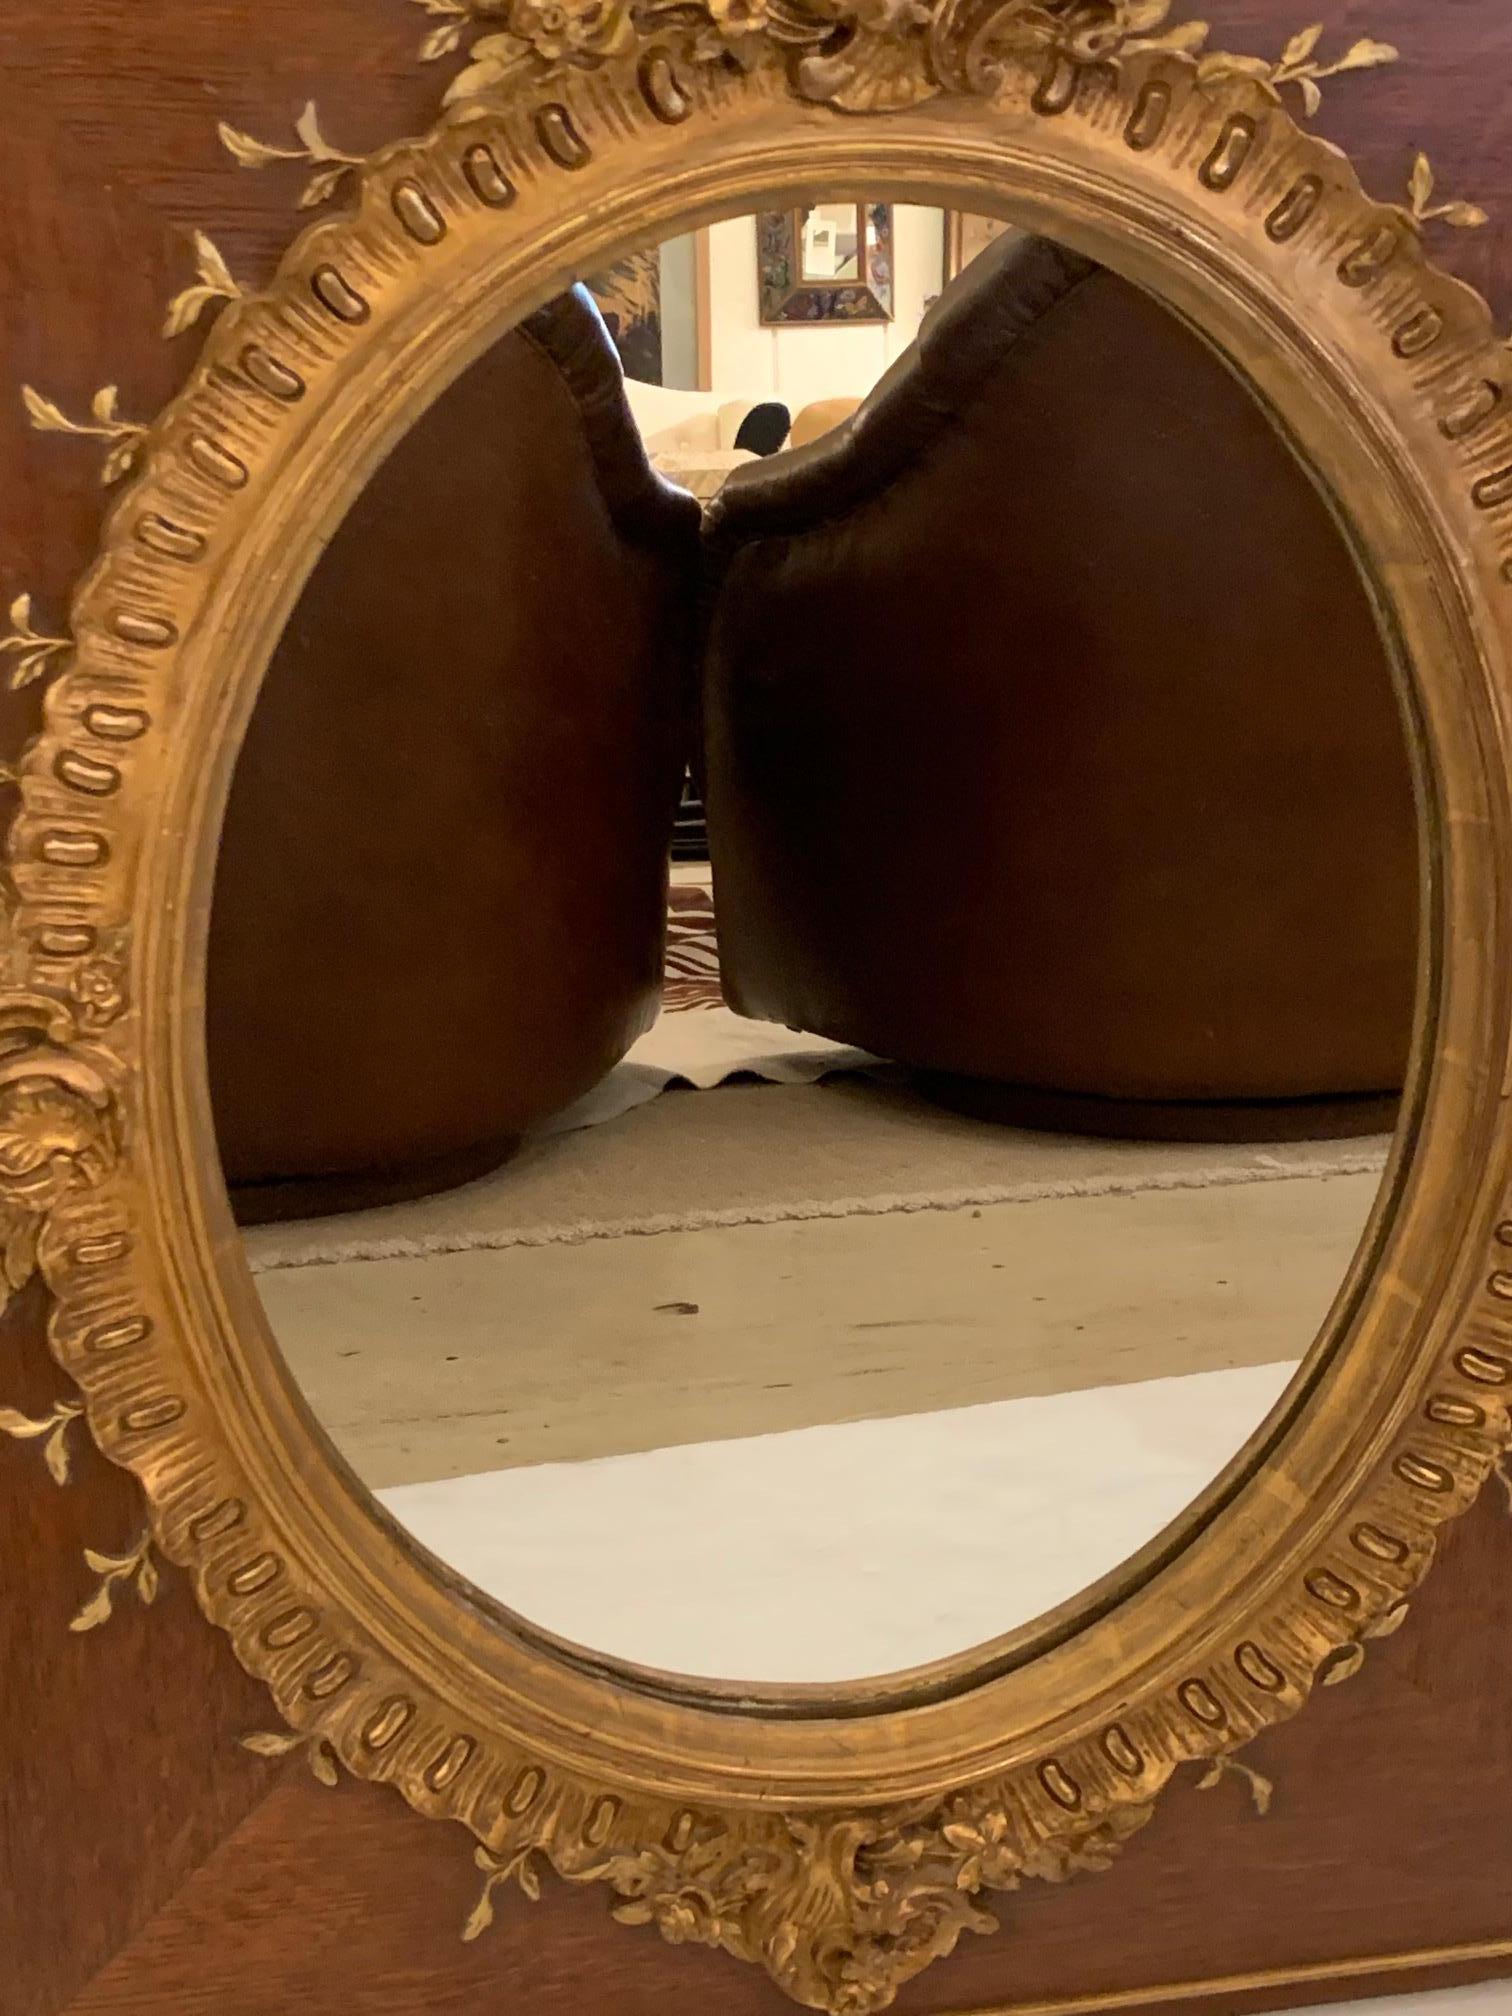 Miroir vintage très inhabituel ayant un fond rectangulaire en chêne et un miroir central ovale en bois doré au premier plan. Un décor en bois doré assorti orne la périphérie du bois.
Le miroir lui-même mesure 19 H x 15 W.